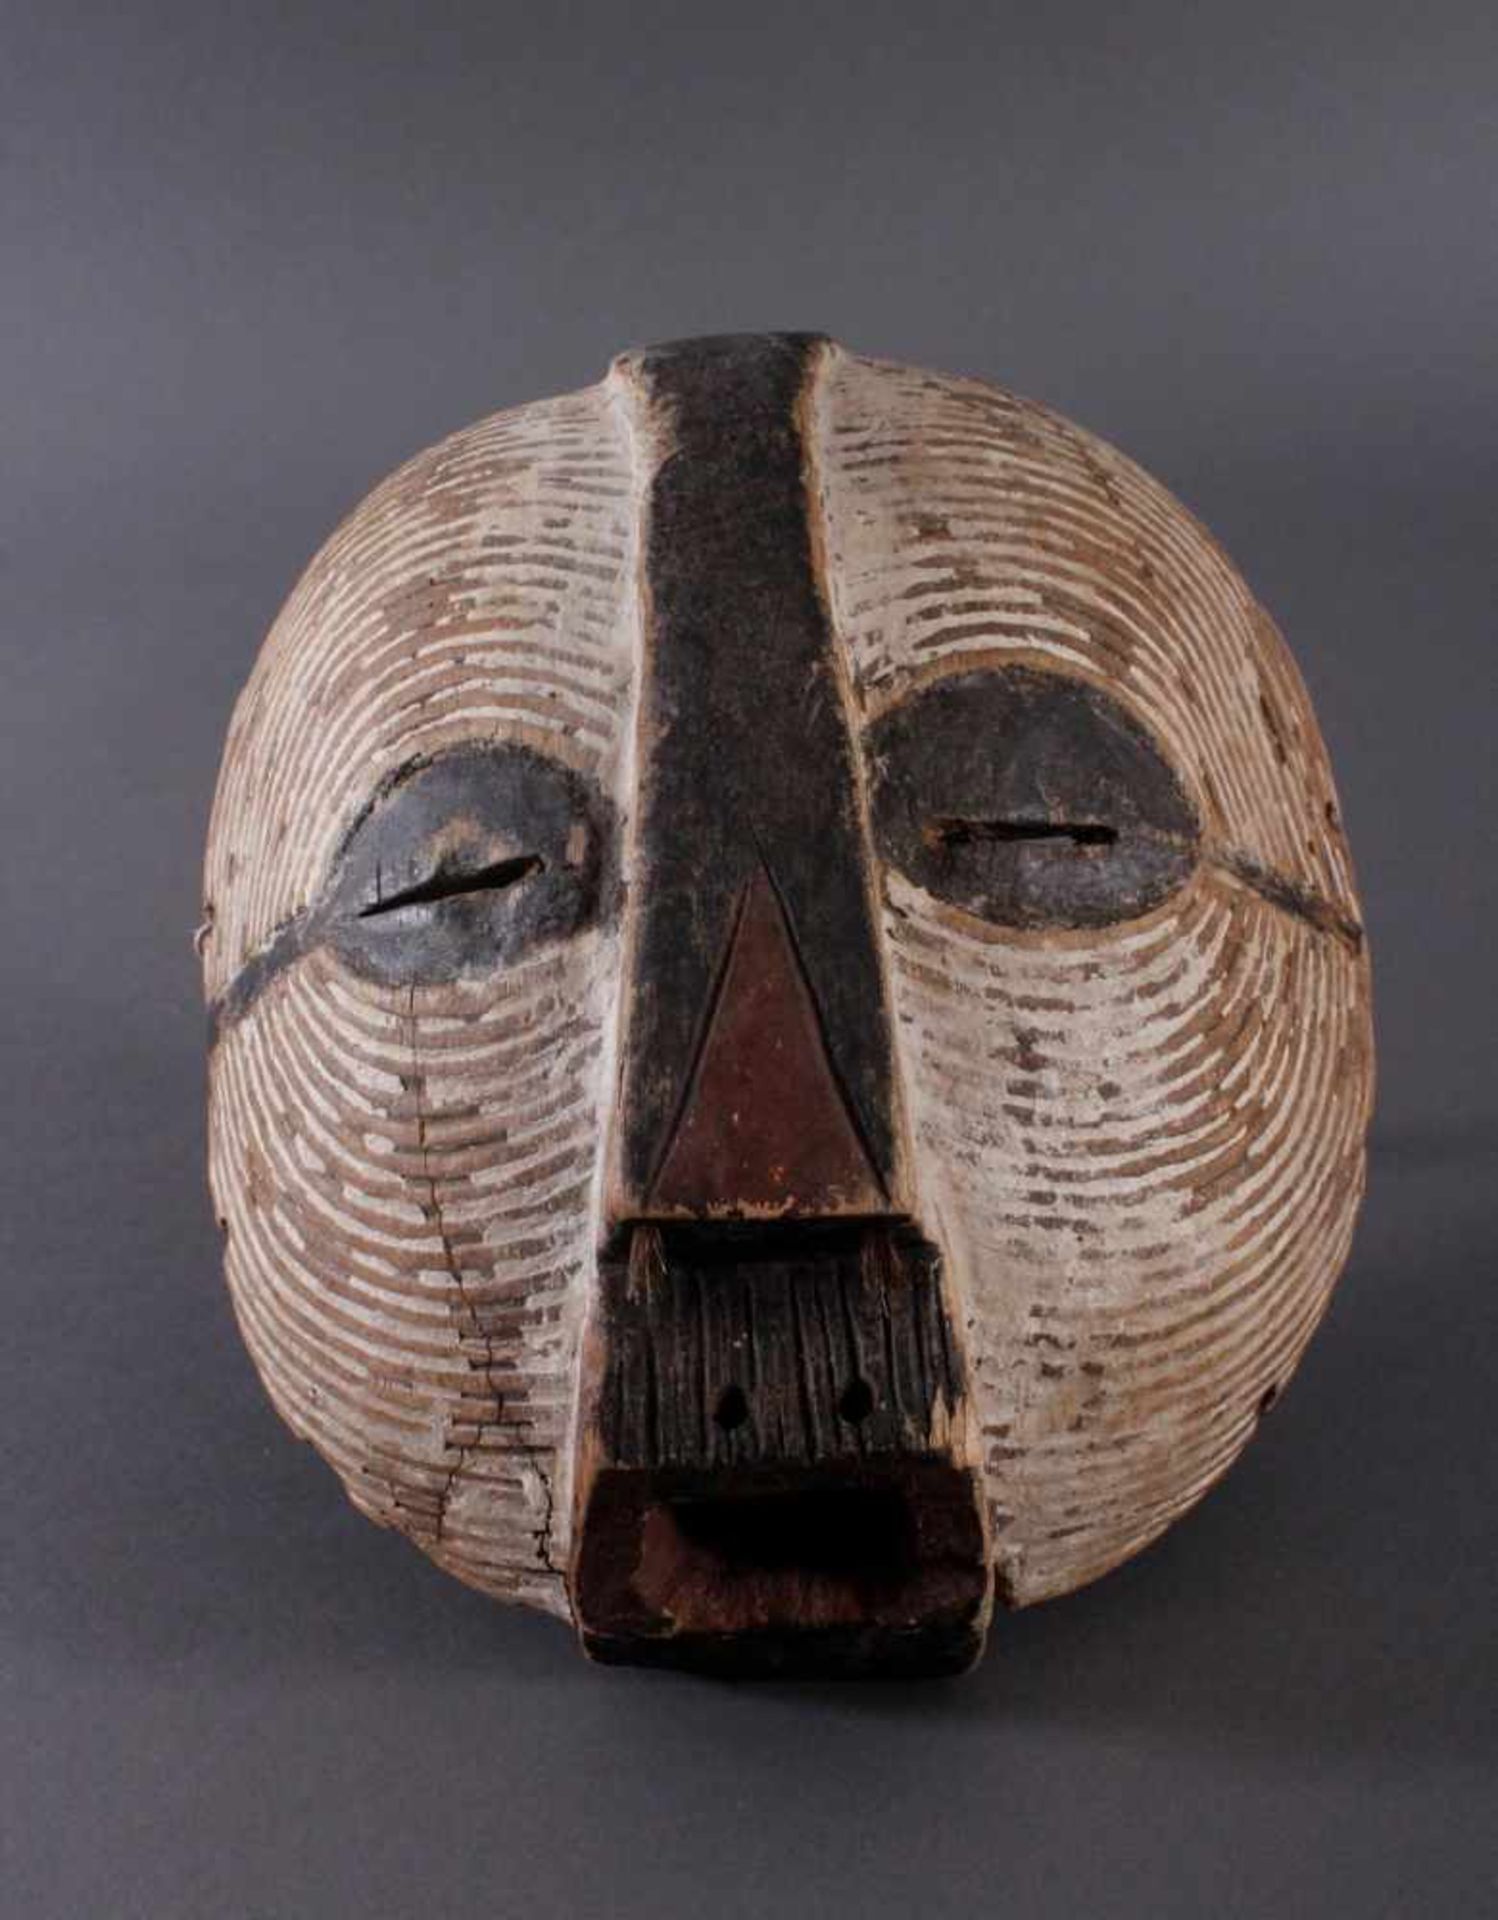 Antike Maske, Luba, KongoHolz geschnitzt, runde "Kifwebe-Maske" der Luba. polychrom gefärbt, mit